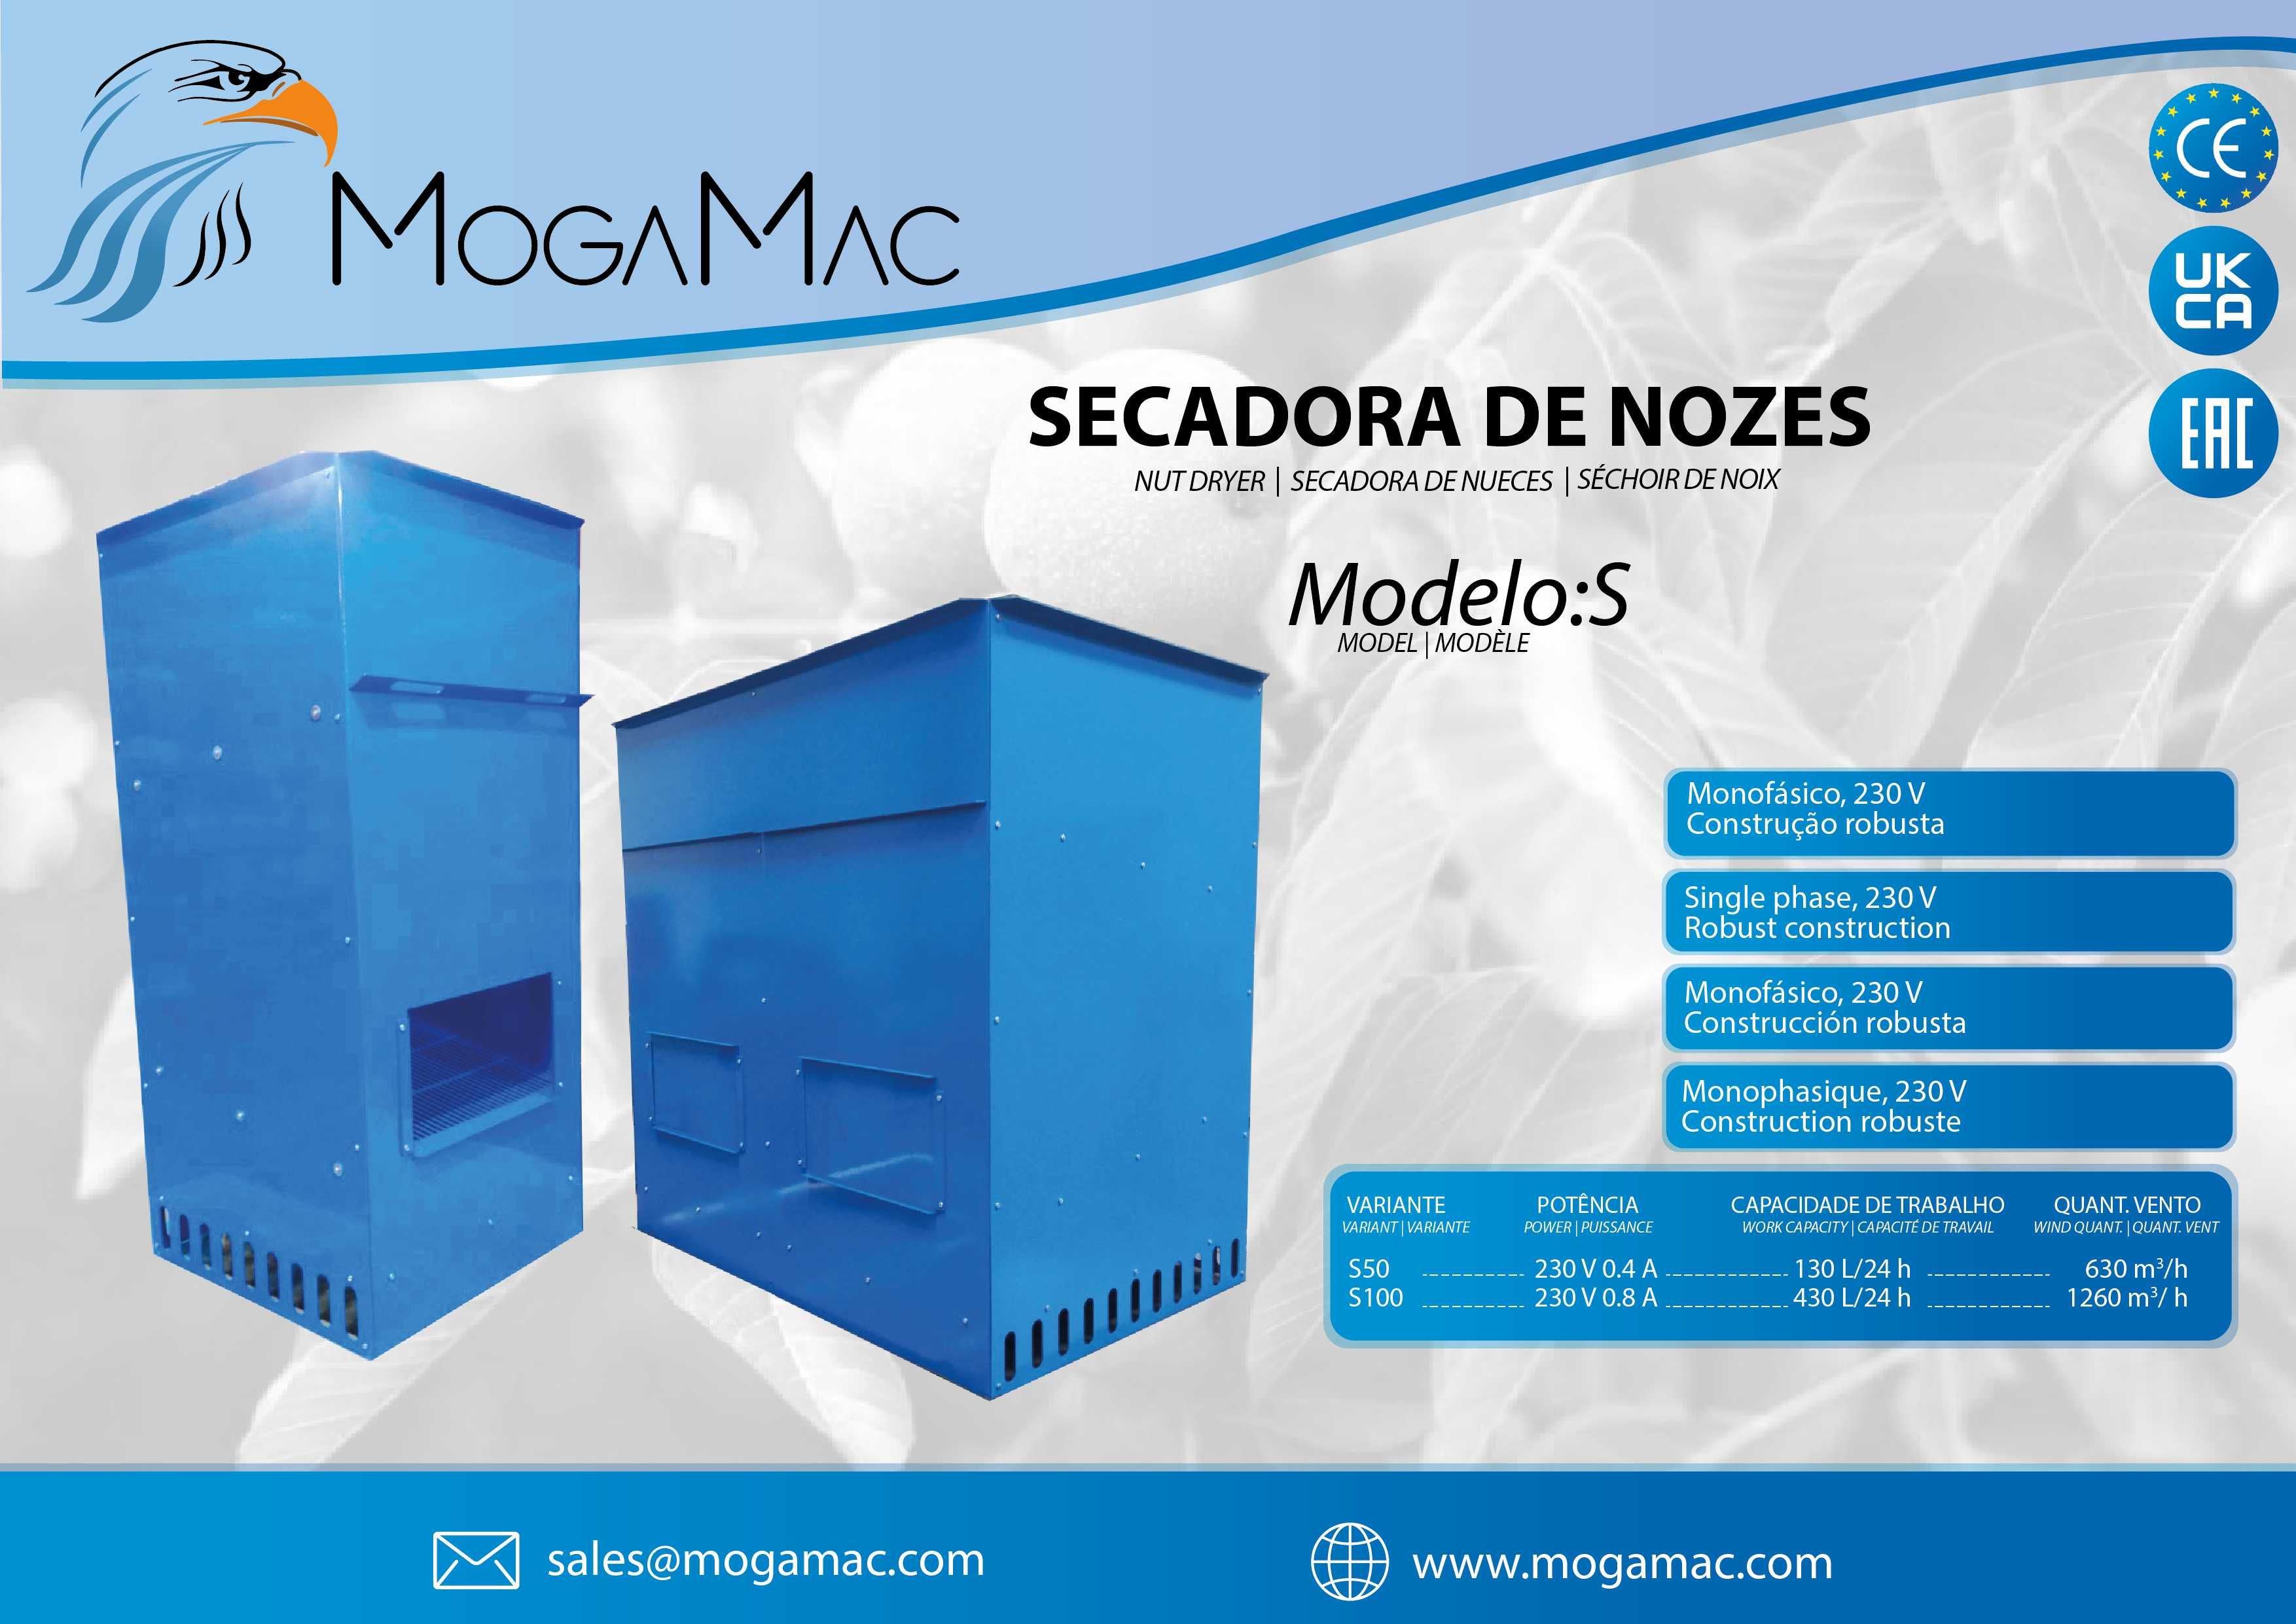 Secadora de frutos secos (Nozes, amêndoas, etc) - MogaMac S50